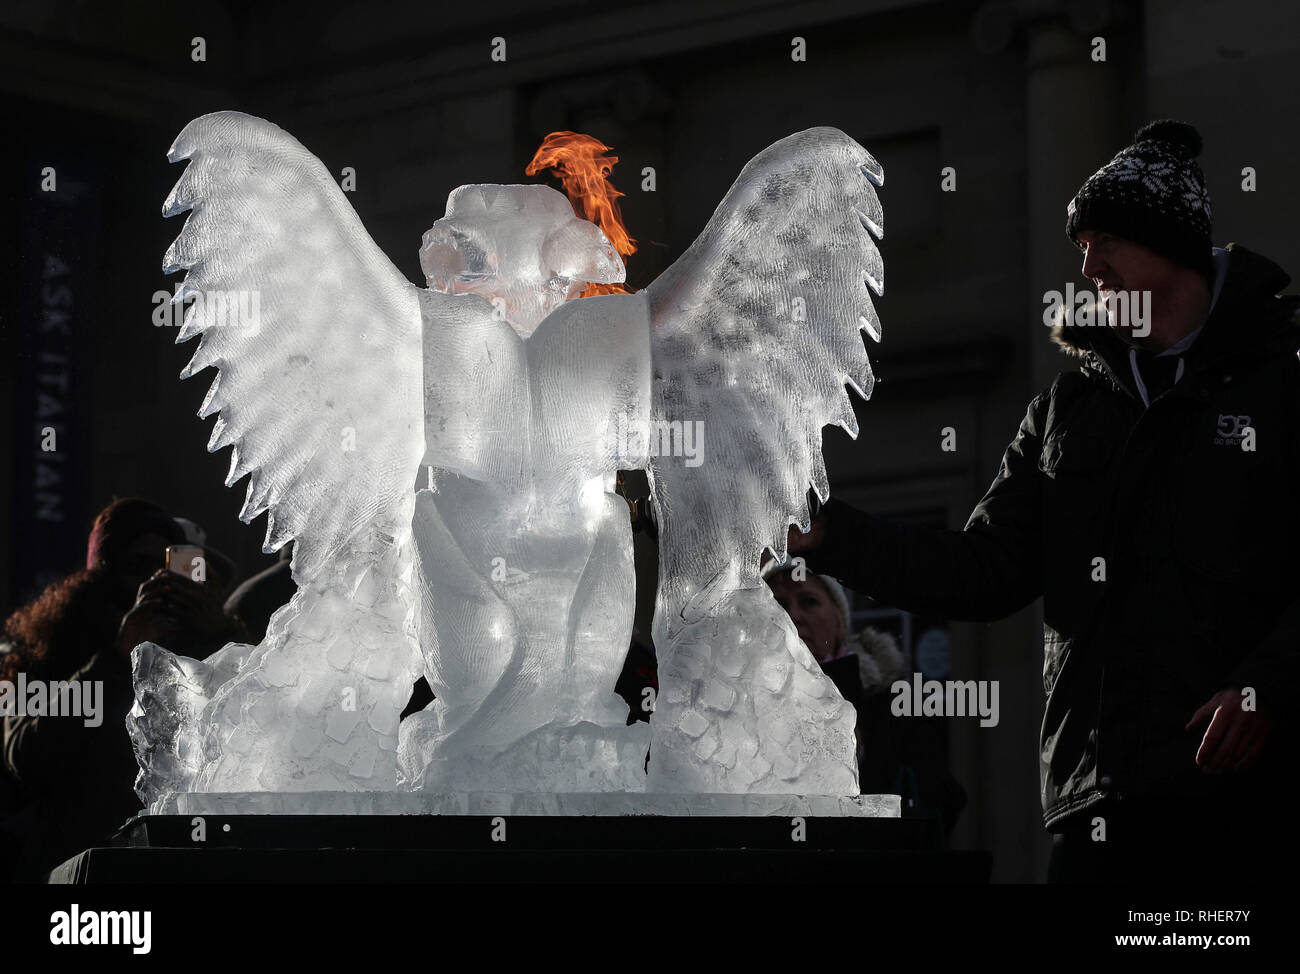 Un souffle le feu sur une sculpture de glace un griffon, une partie du sentier de glace de New York, dans le Yorkshire, après une nuit de neige hier et devraient entraîner des troubles. Banque D'Images